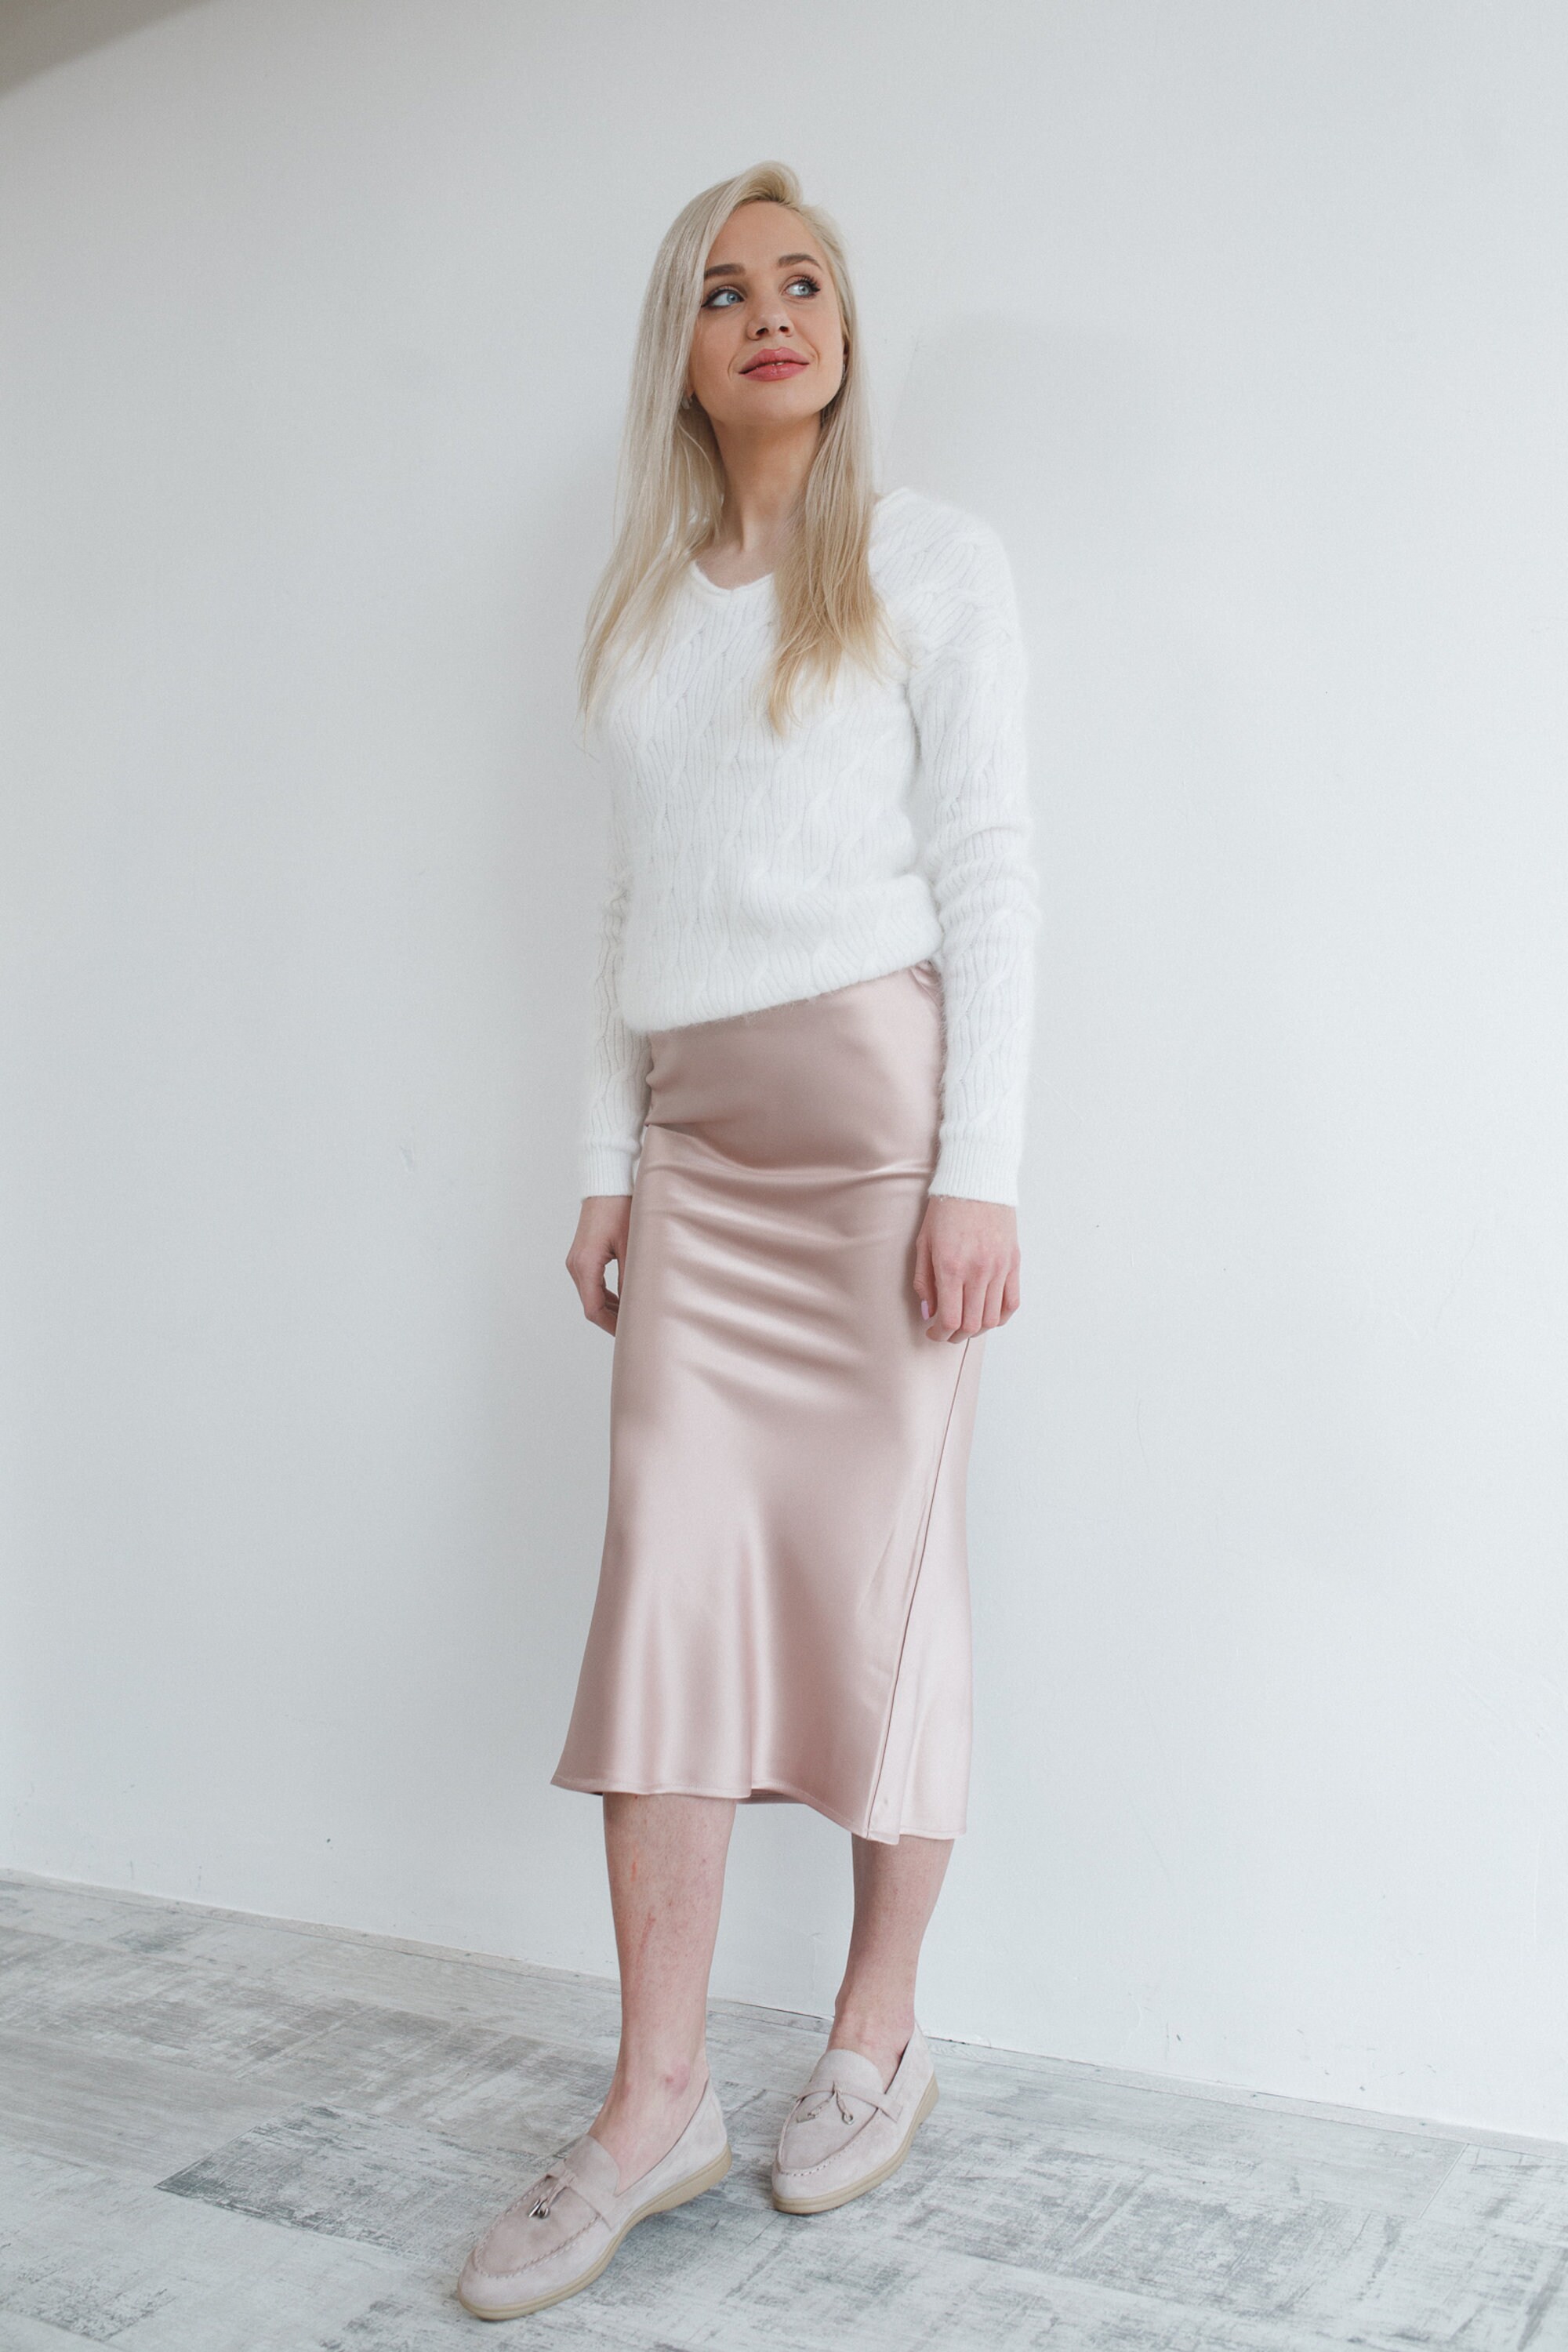 Silk Skirt Midi Satin Skirt Slip High Waisted Skirt Light | Etsy